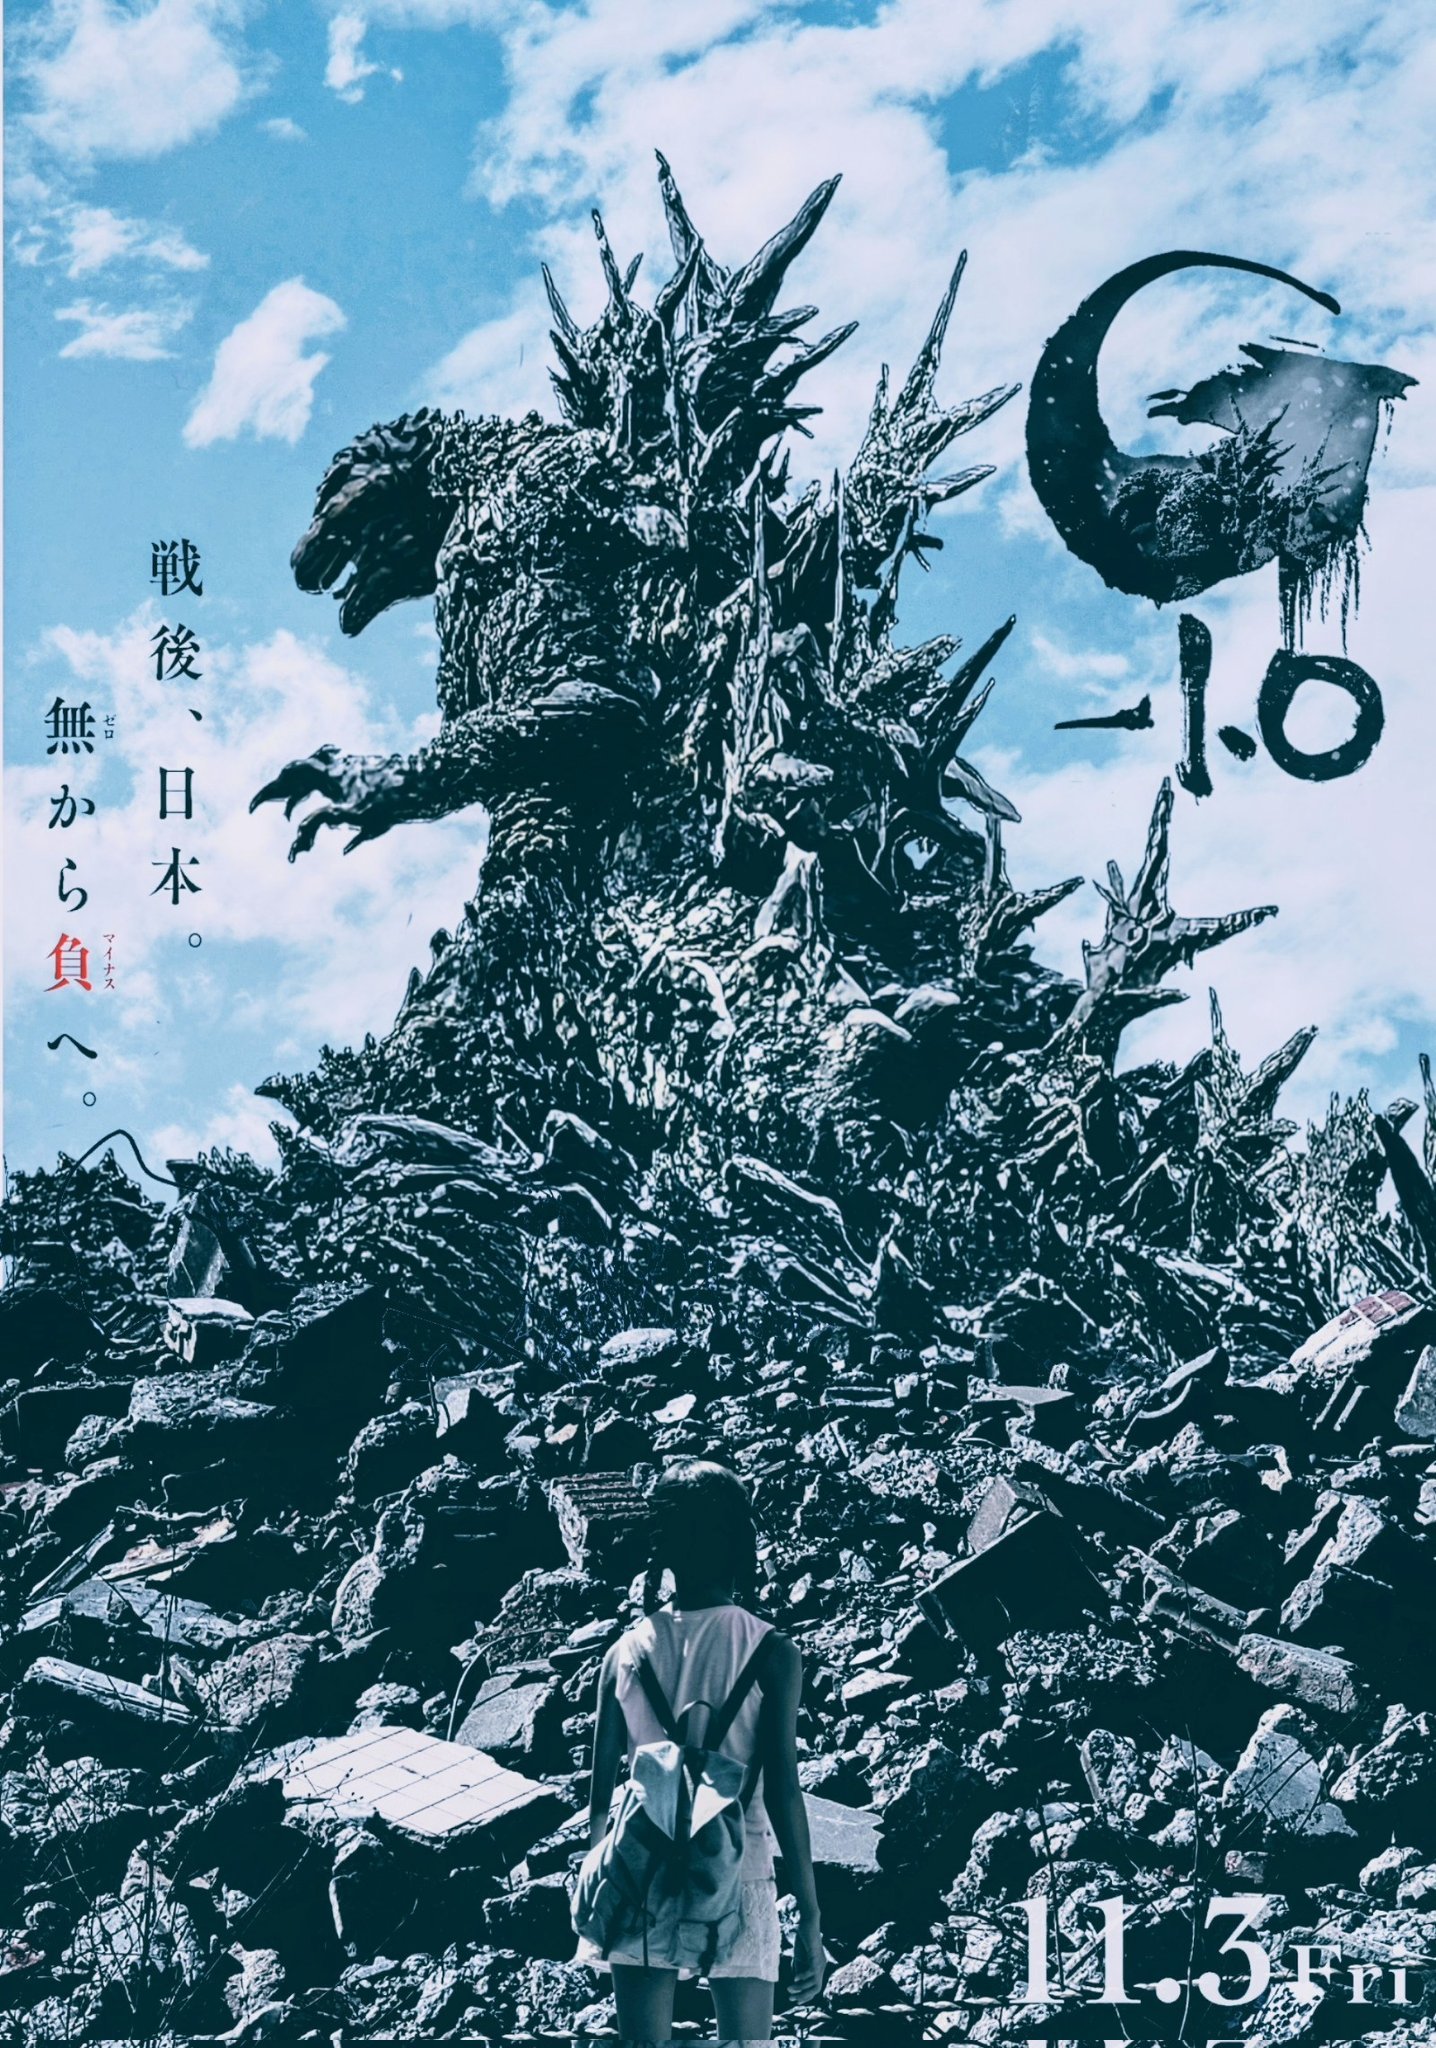 Godzilla minus one poster